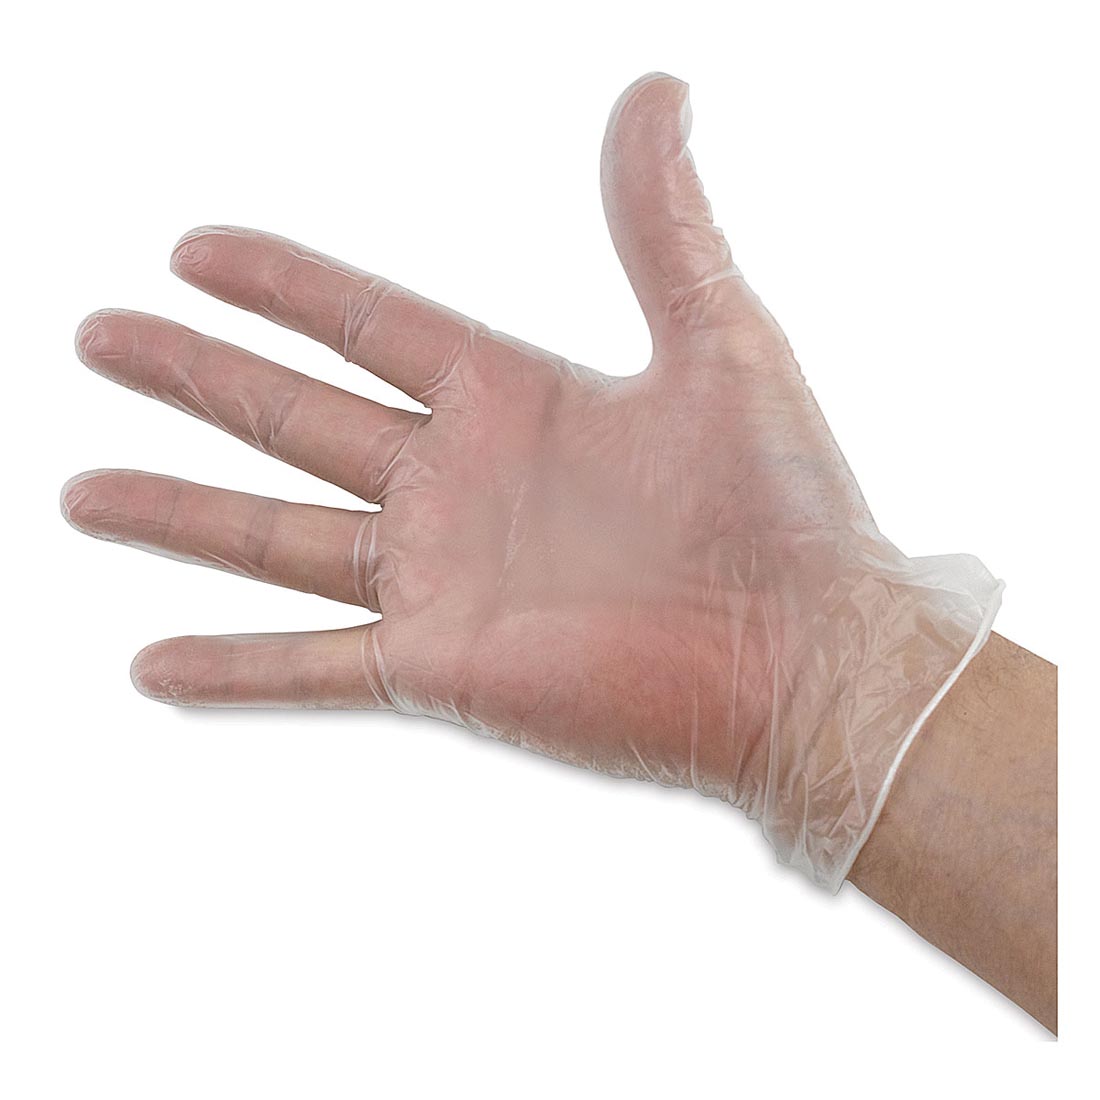 Hand Wearing a White Vinyl Glove